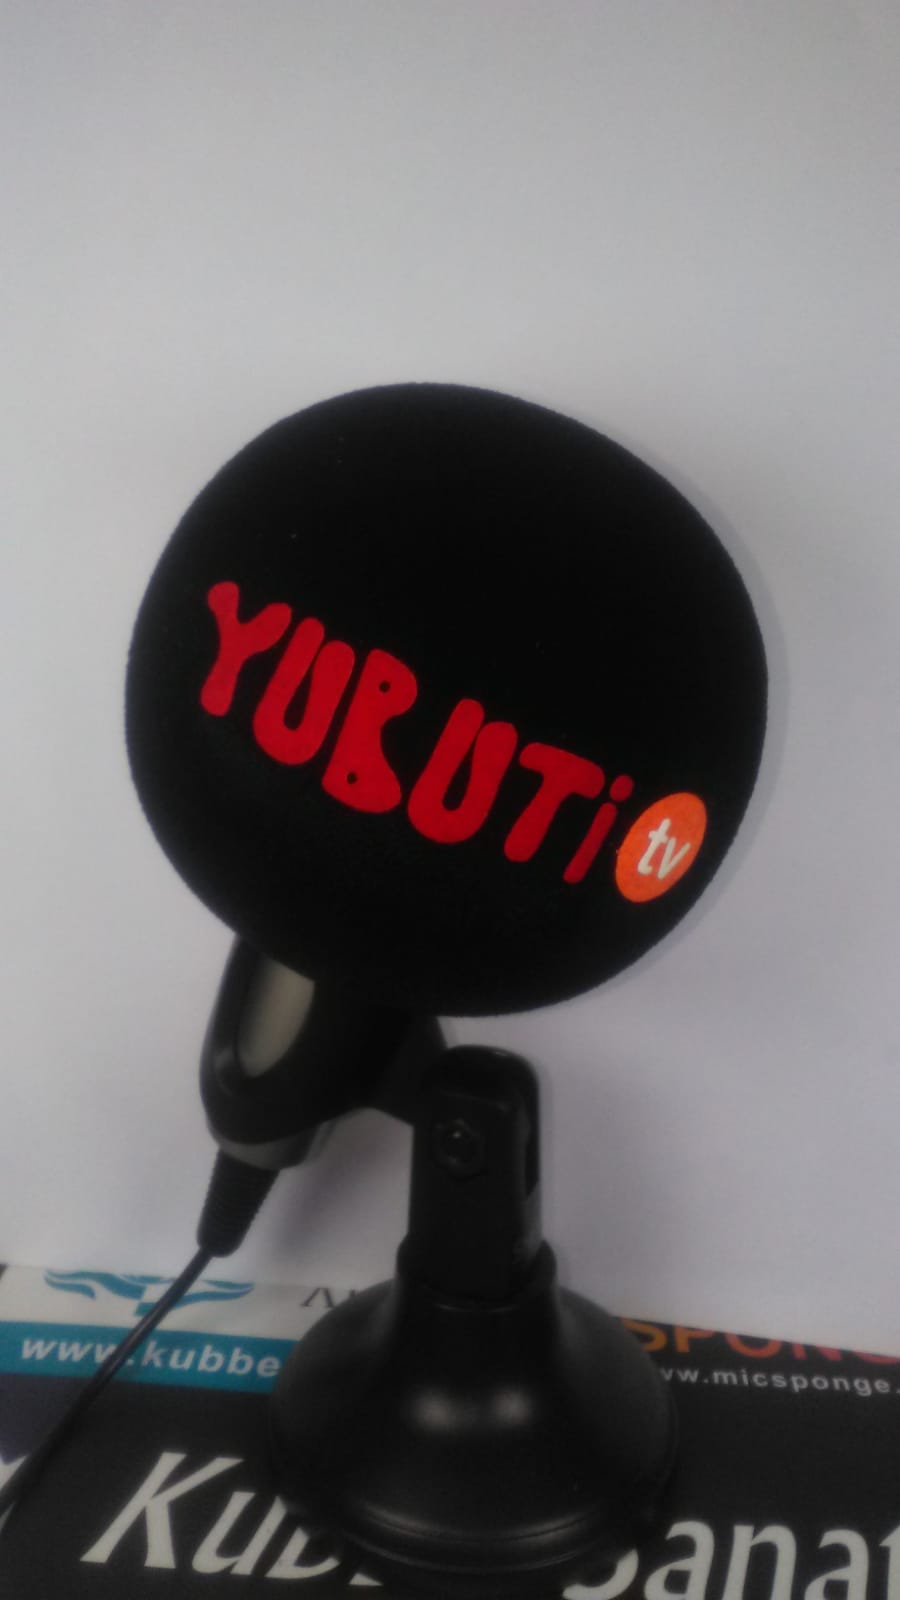 Logolu mikrofon süngeri ve baskılı mikrofon süngeri logolu sünger baskılı sünger (107)